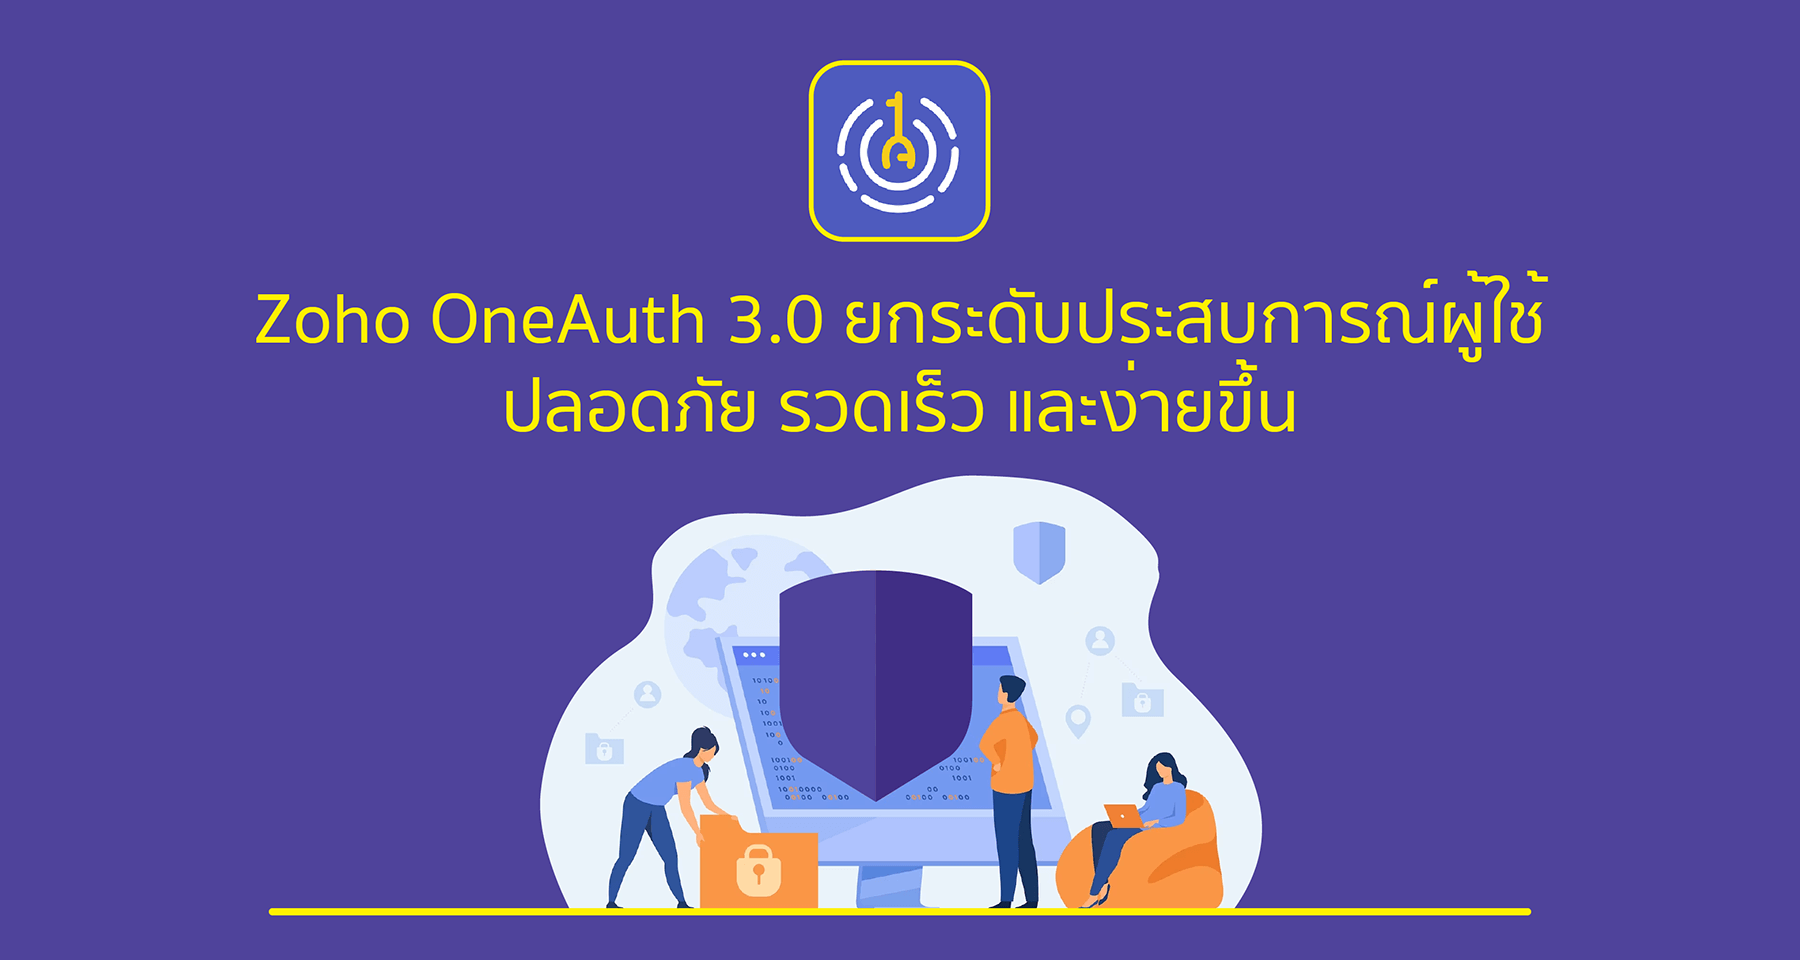 Zoho OneAuth 3.0 ยกระดับประสบการณ์ผู้ใช้ ปลอดภัย รวดเร็ว และง่ายขึ้น